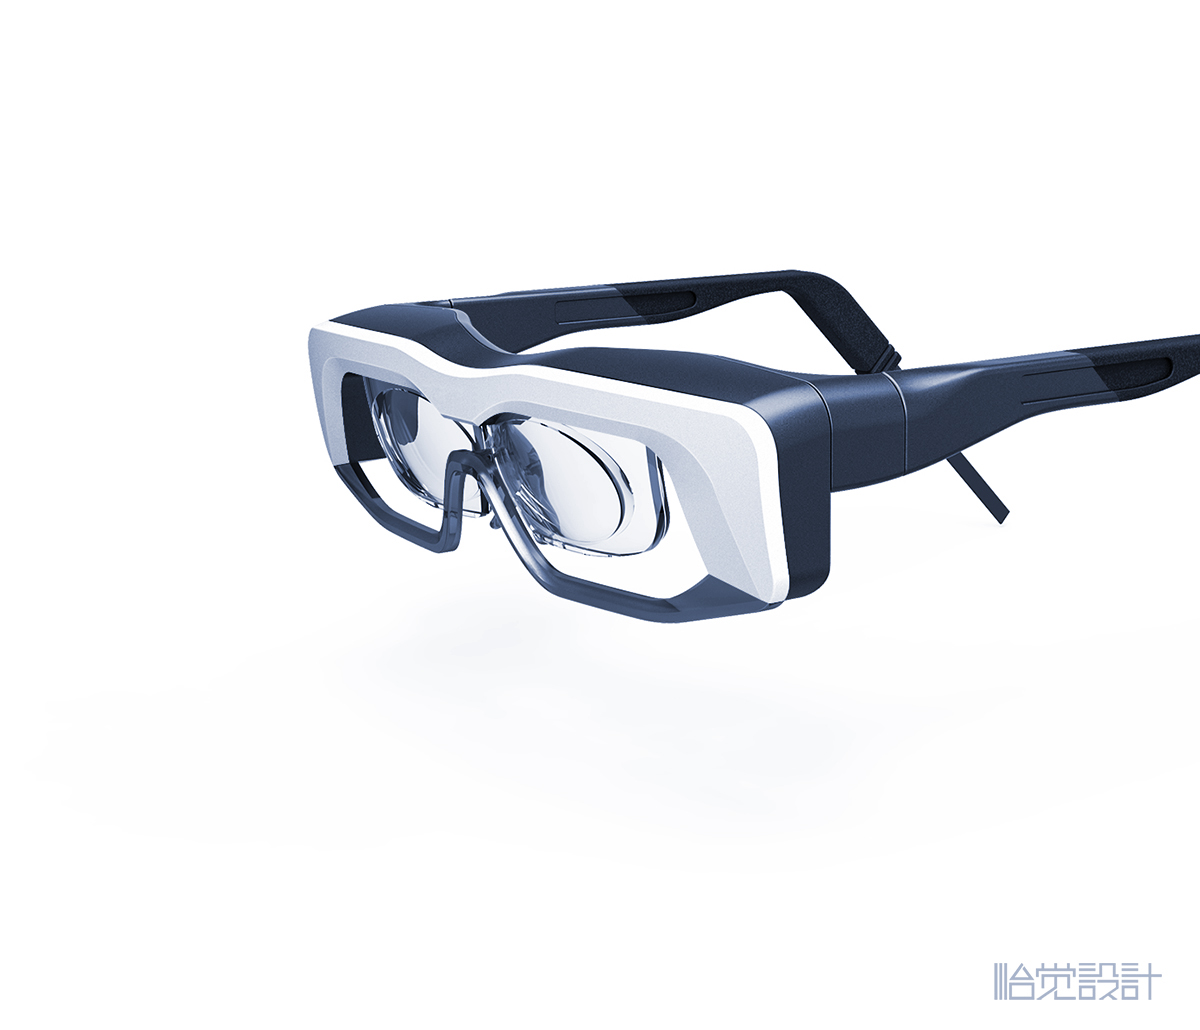 缓解近视眼镜-AR眼镜-智能眼镜-治疗眼镜-穿戴产品-怡觉设计 (2).jpg